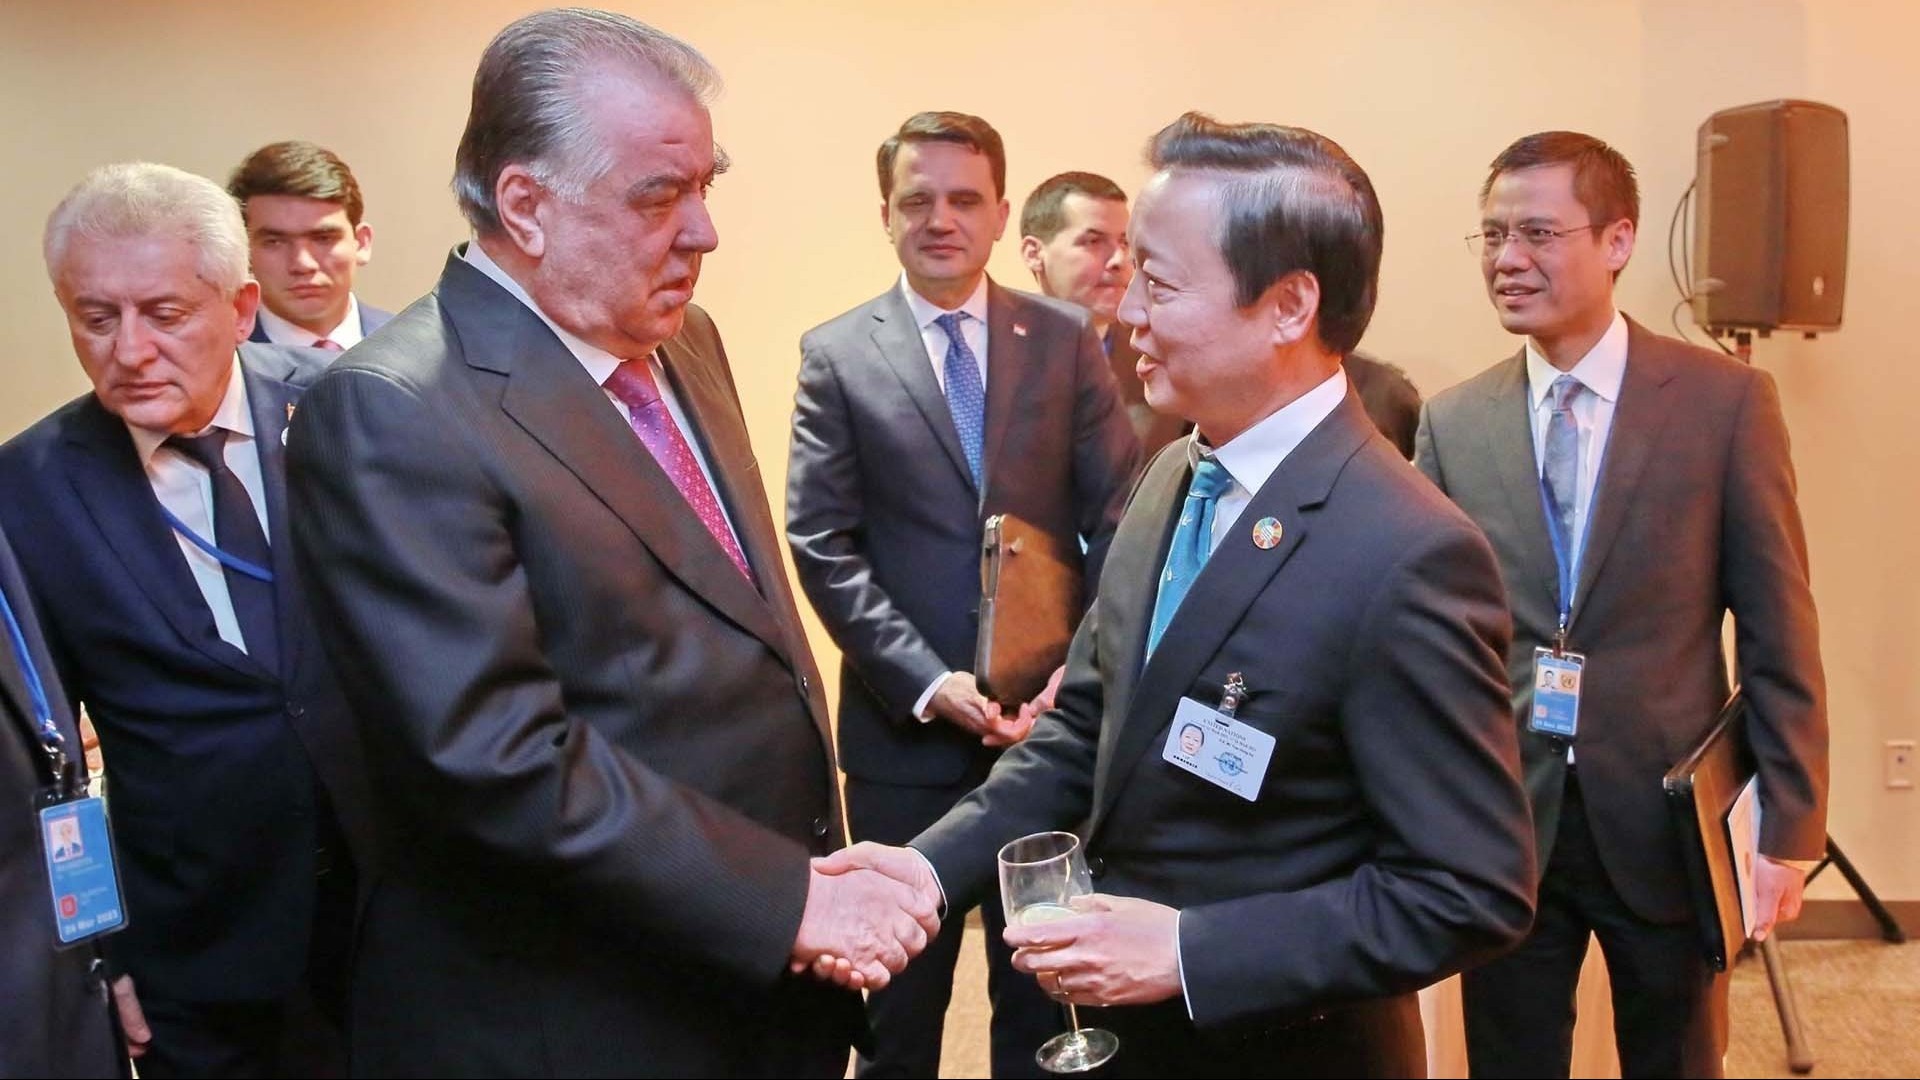 Phó Thủ tướng Trần Hồng Hà tiếp xúc với lãnh đạo các nước và tổ chức quốc tế